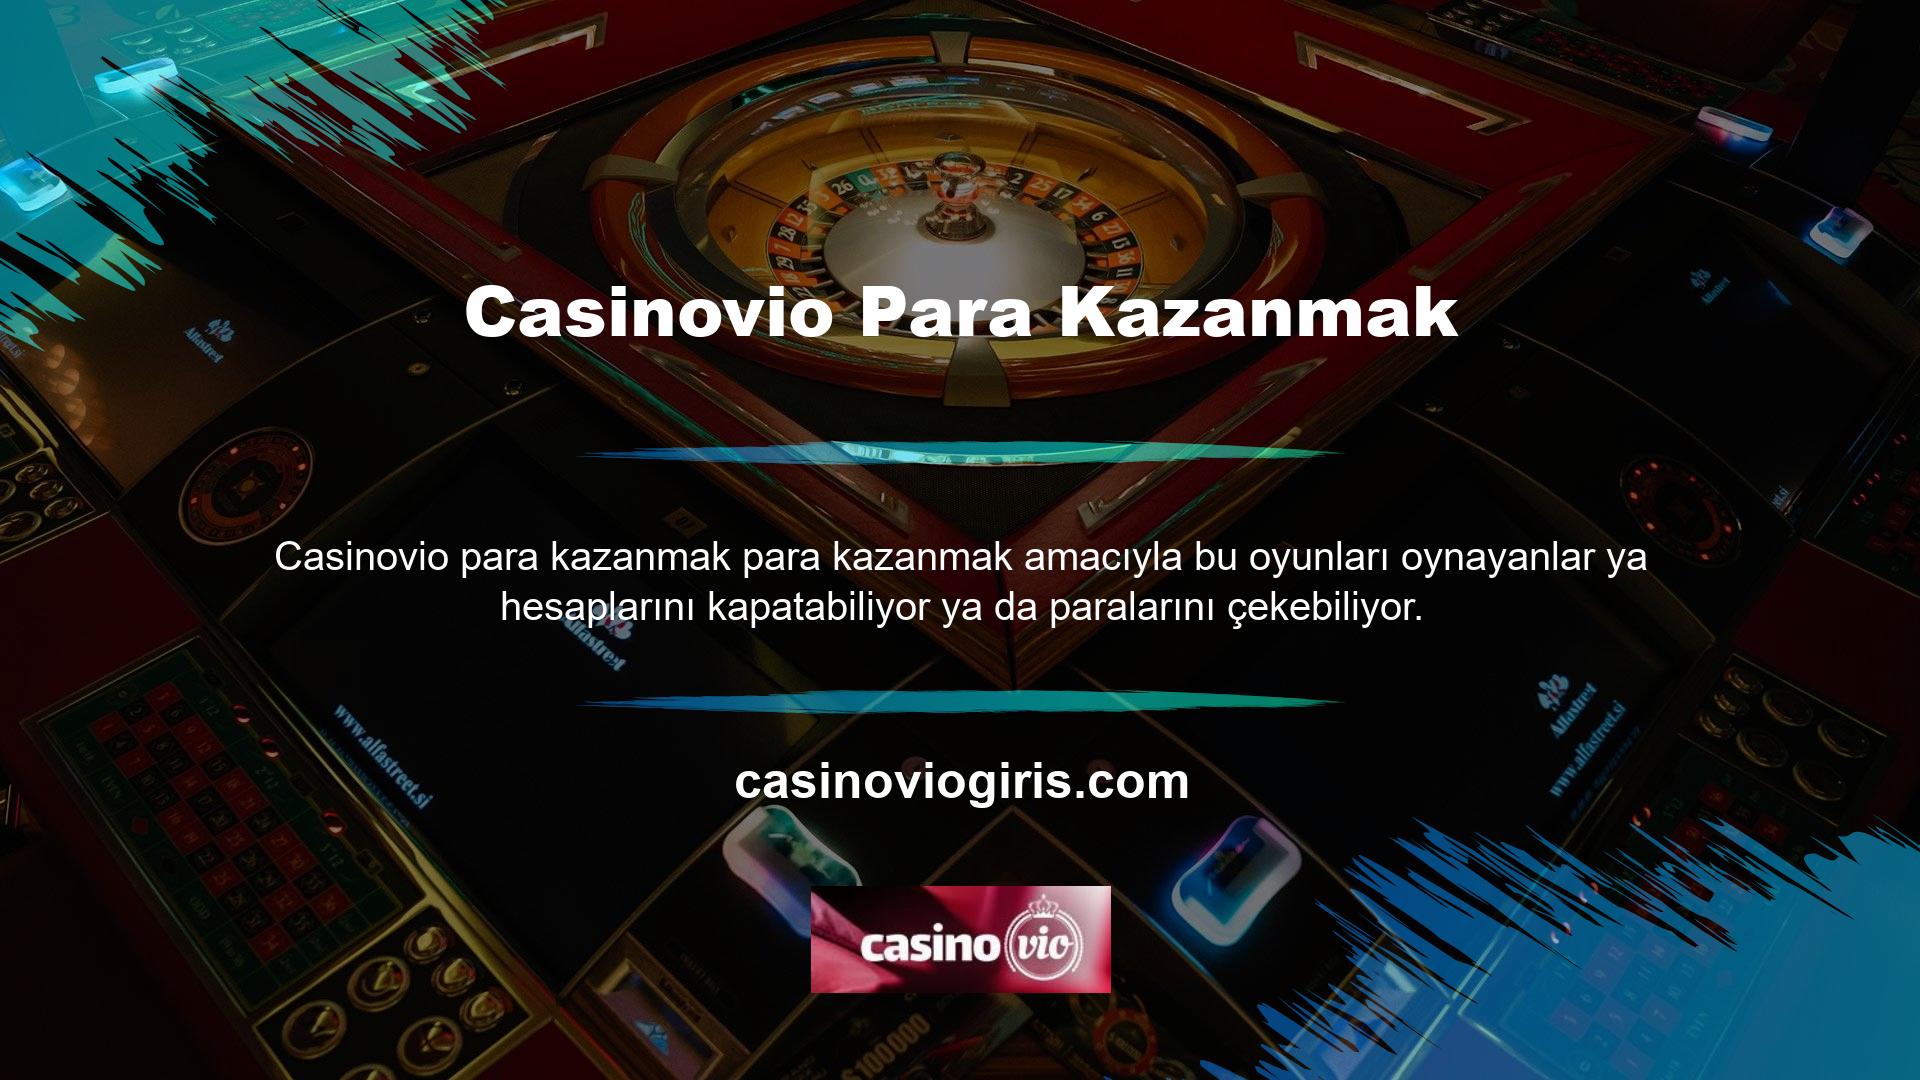 Oyuncuların ne kadar kötü günler geçirdiğini gören Casinovio, bunu kendi dillerinde konuşan "ekspres" bir telefon hattıyla ve ülkelerindeki bankalardan destek alarak çözmek istiyor